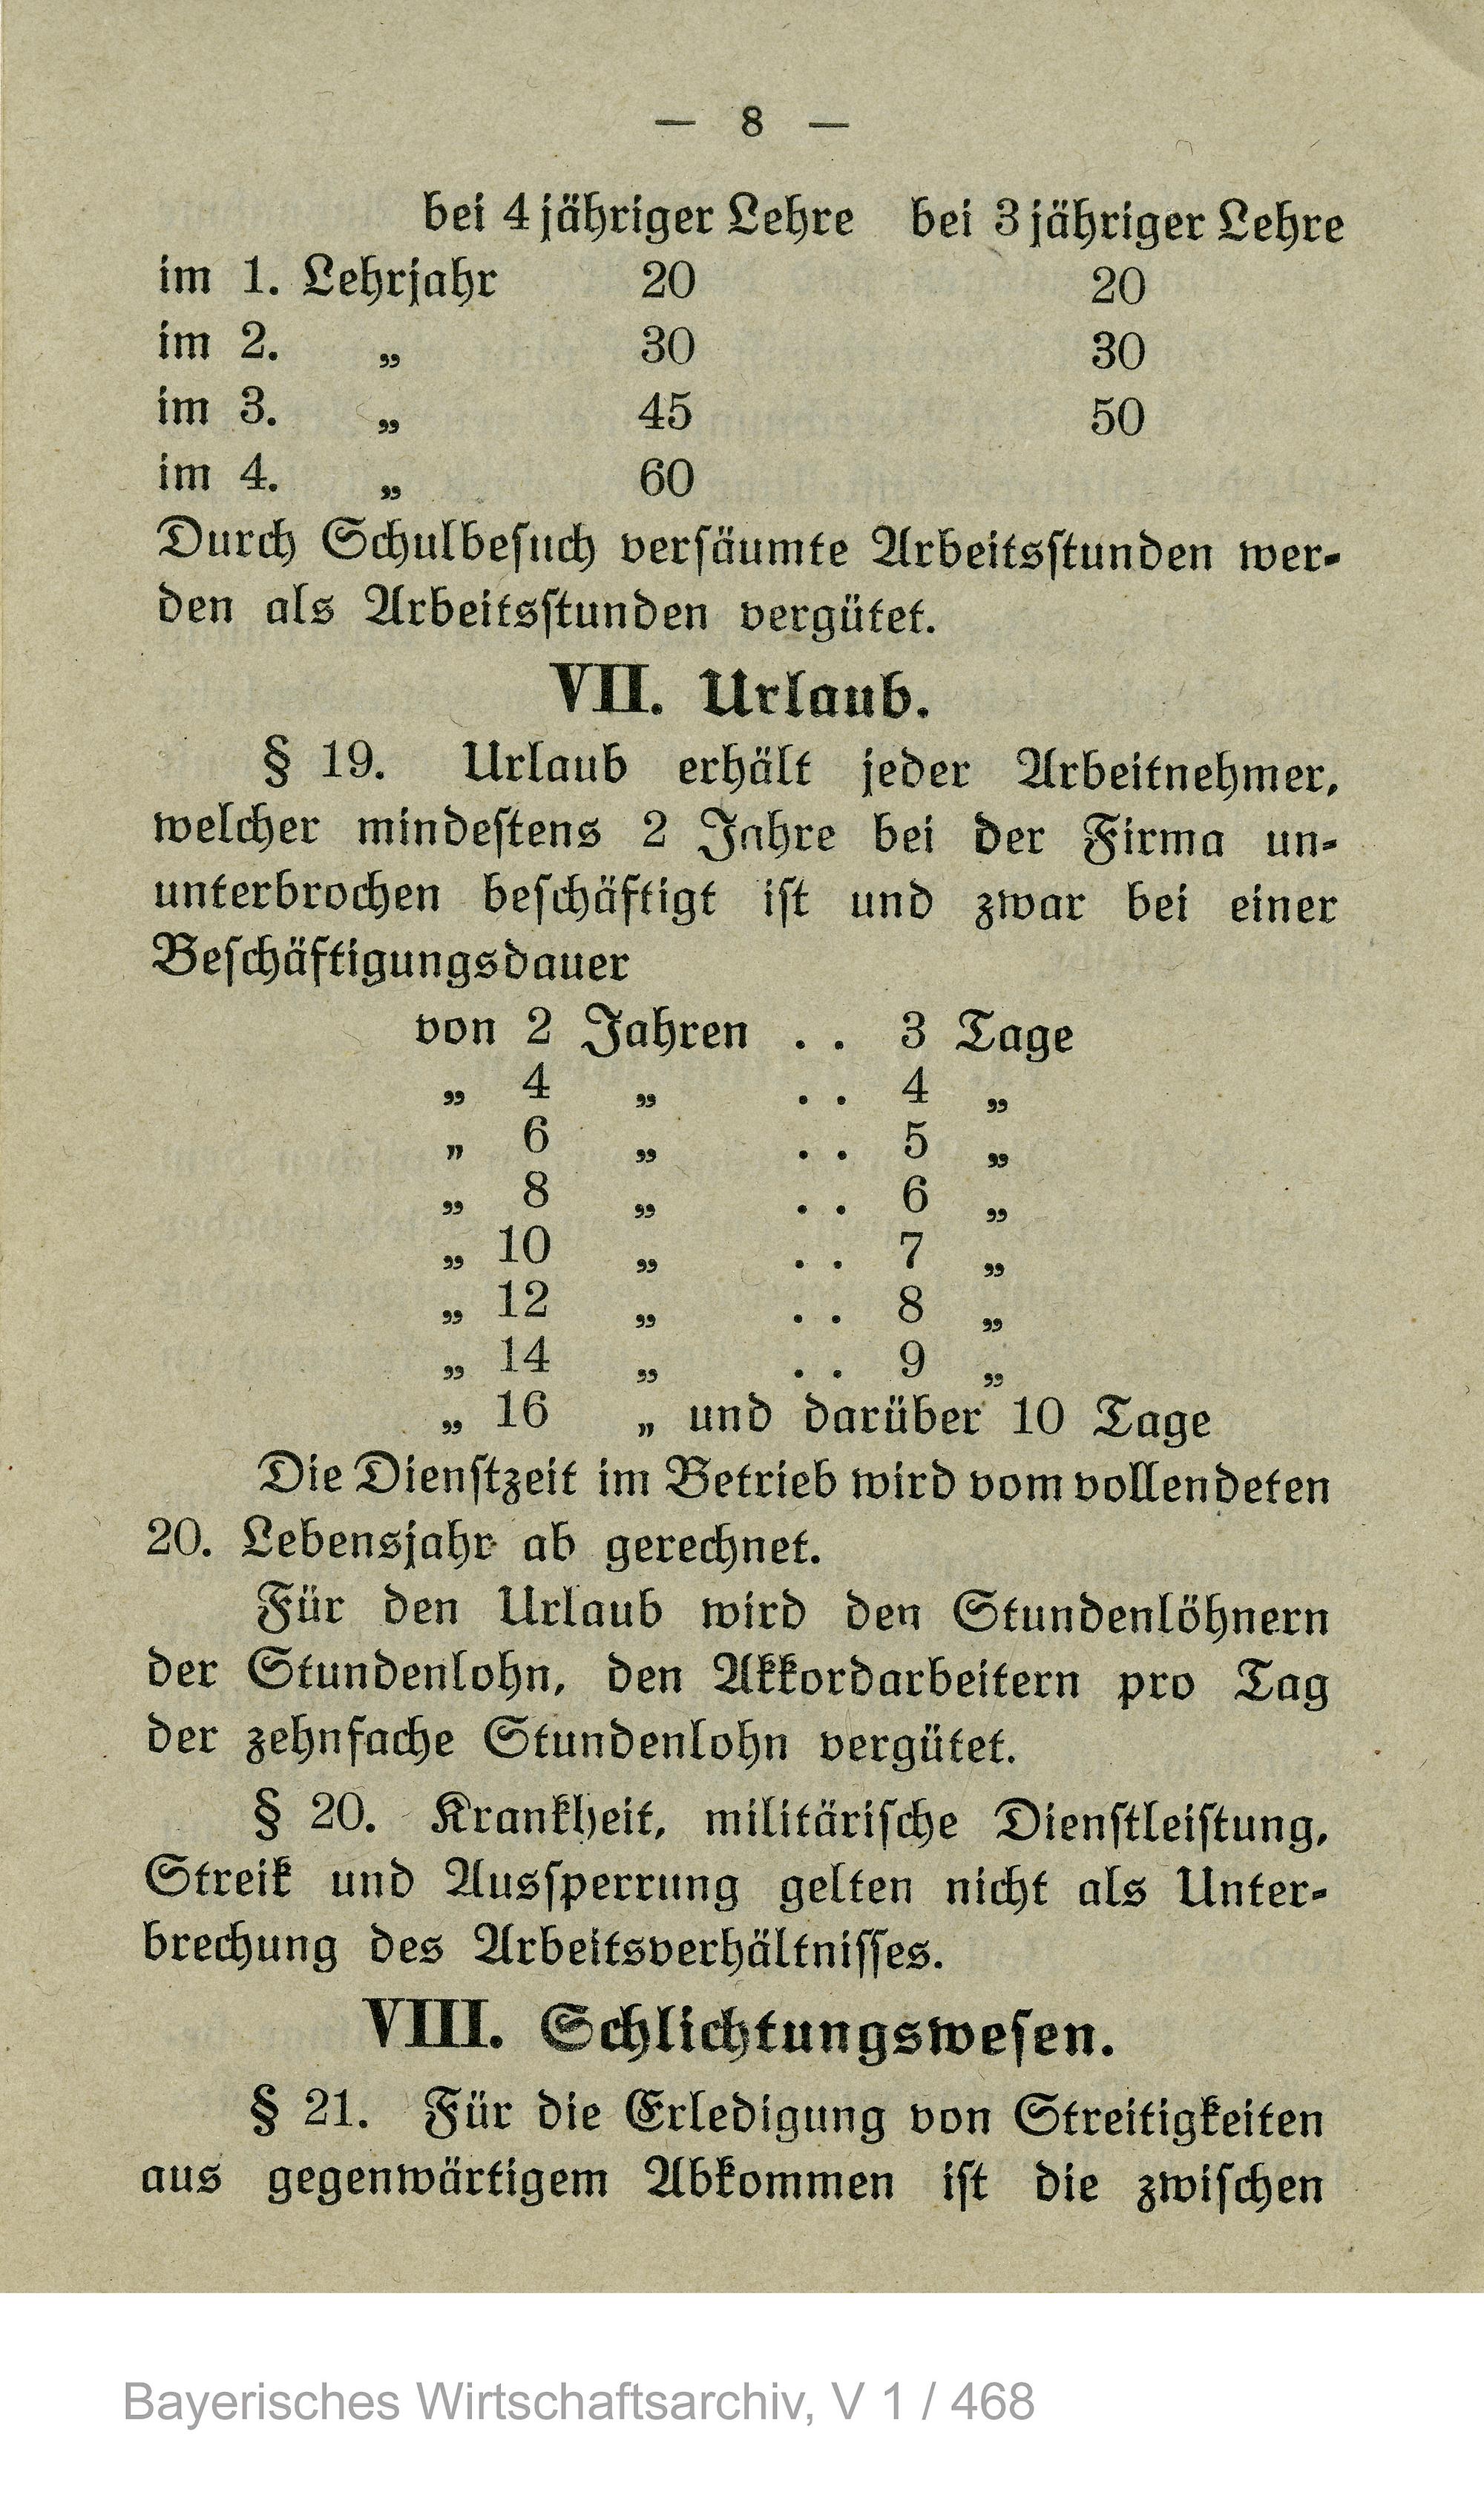 Der erste Tarifvertrag in der bayerischen Metallindustrie vom 14. April 1919 mit Bestimmungen zum Urlaub